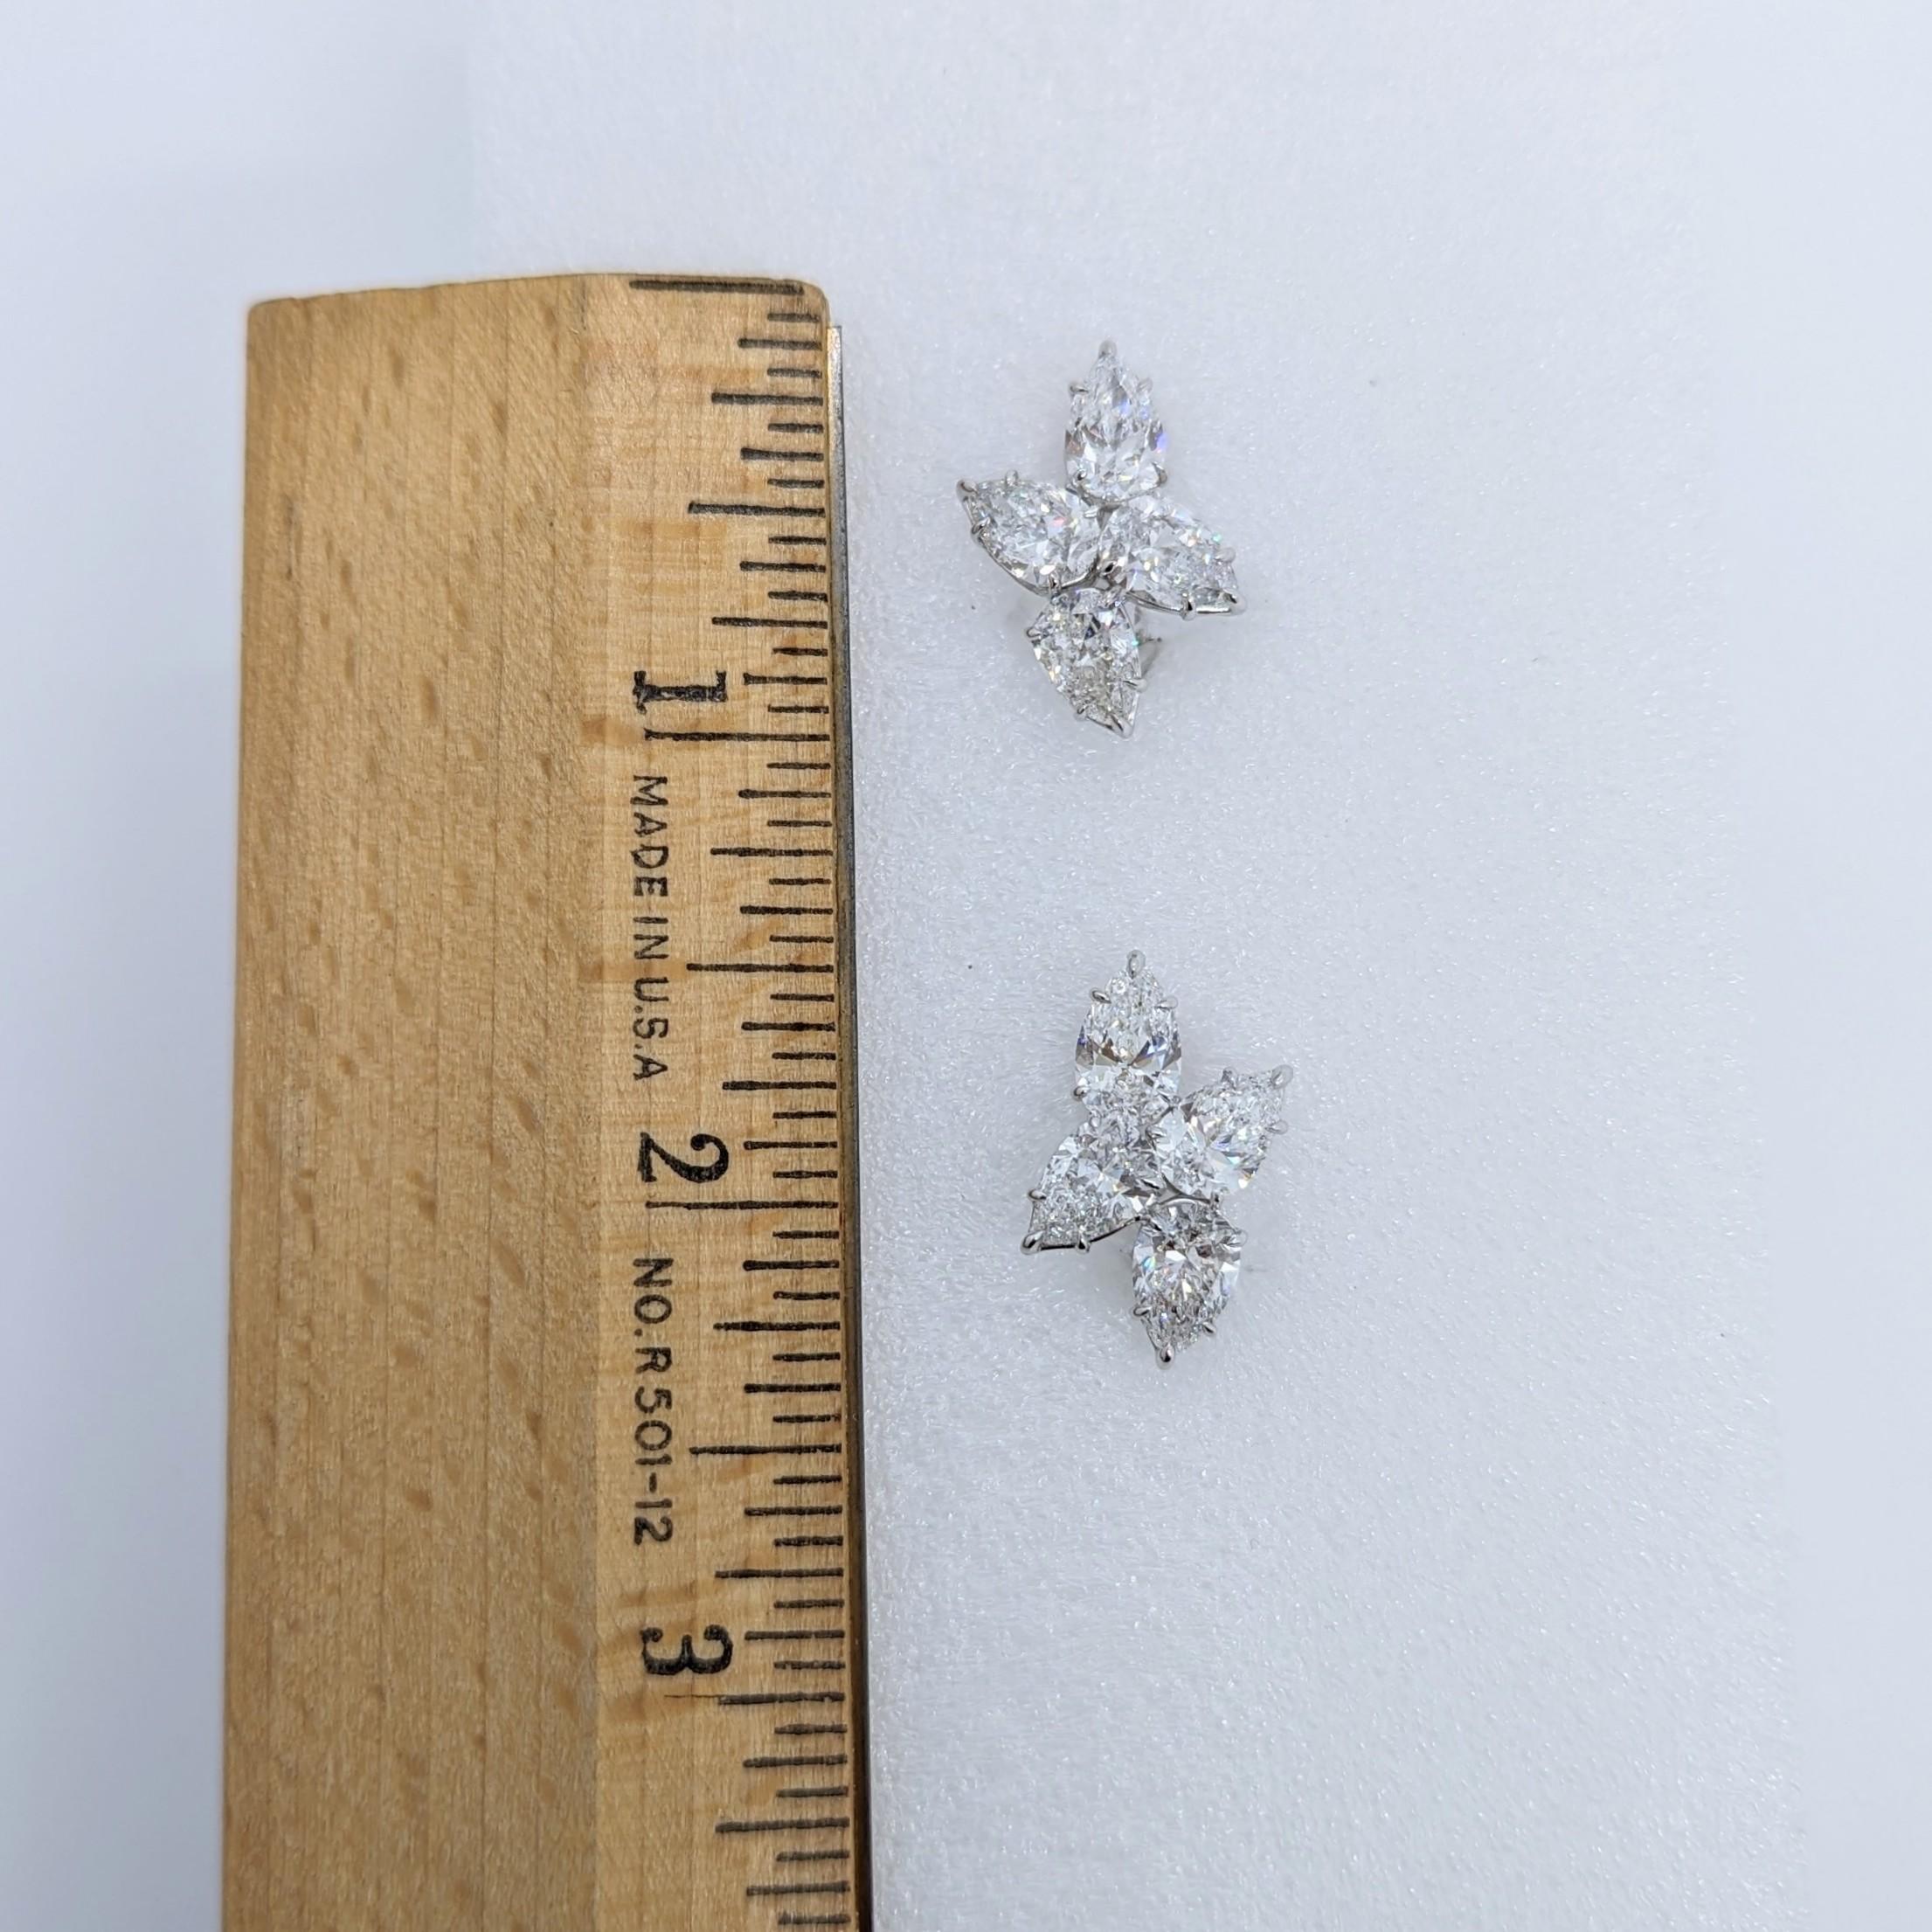 GIA White Diamond Pear Shape Cluster Earrings in 18K White Gold For Sale 1